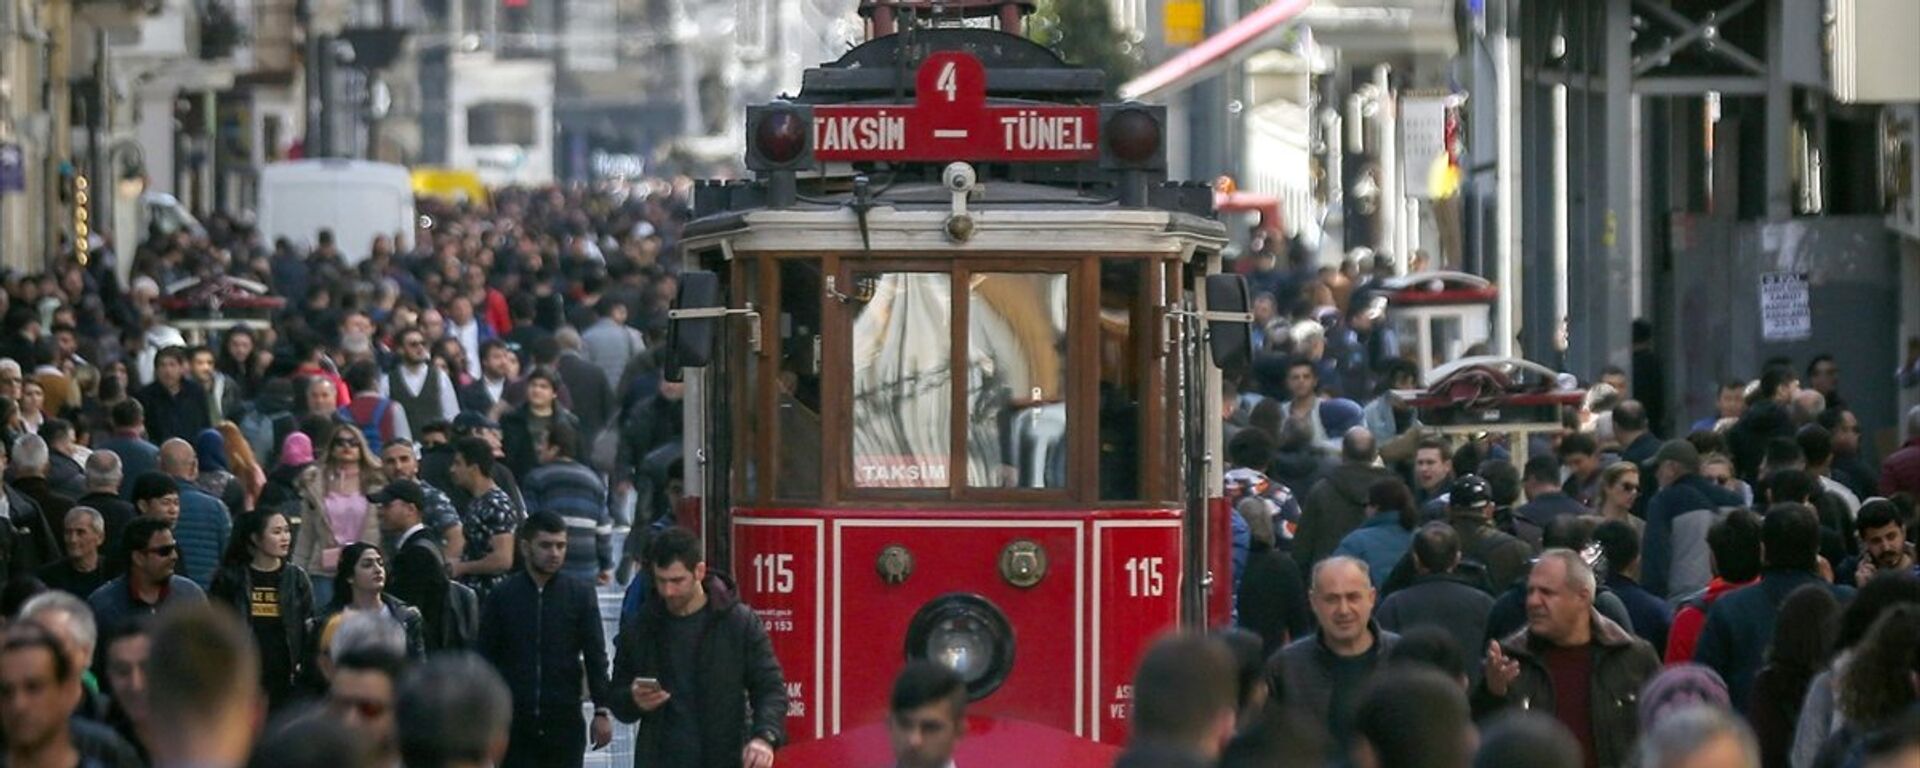 Taksim, İstiklal Caddesi, Beyoğlu, kalabalık - Sputnik Türkiye, 1920, 28.11.2018